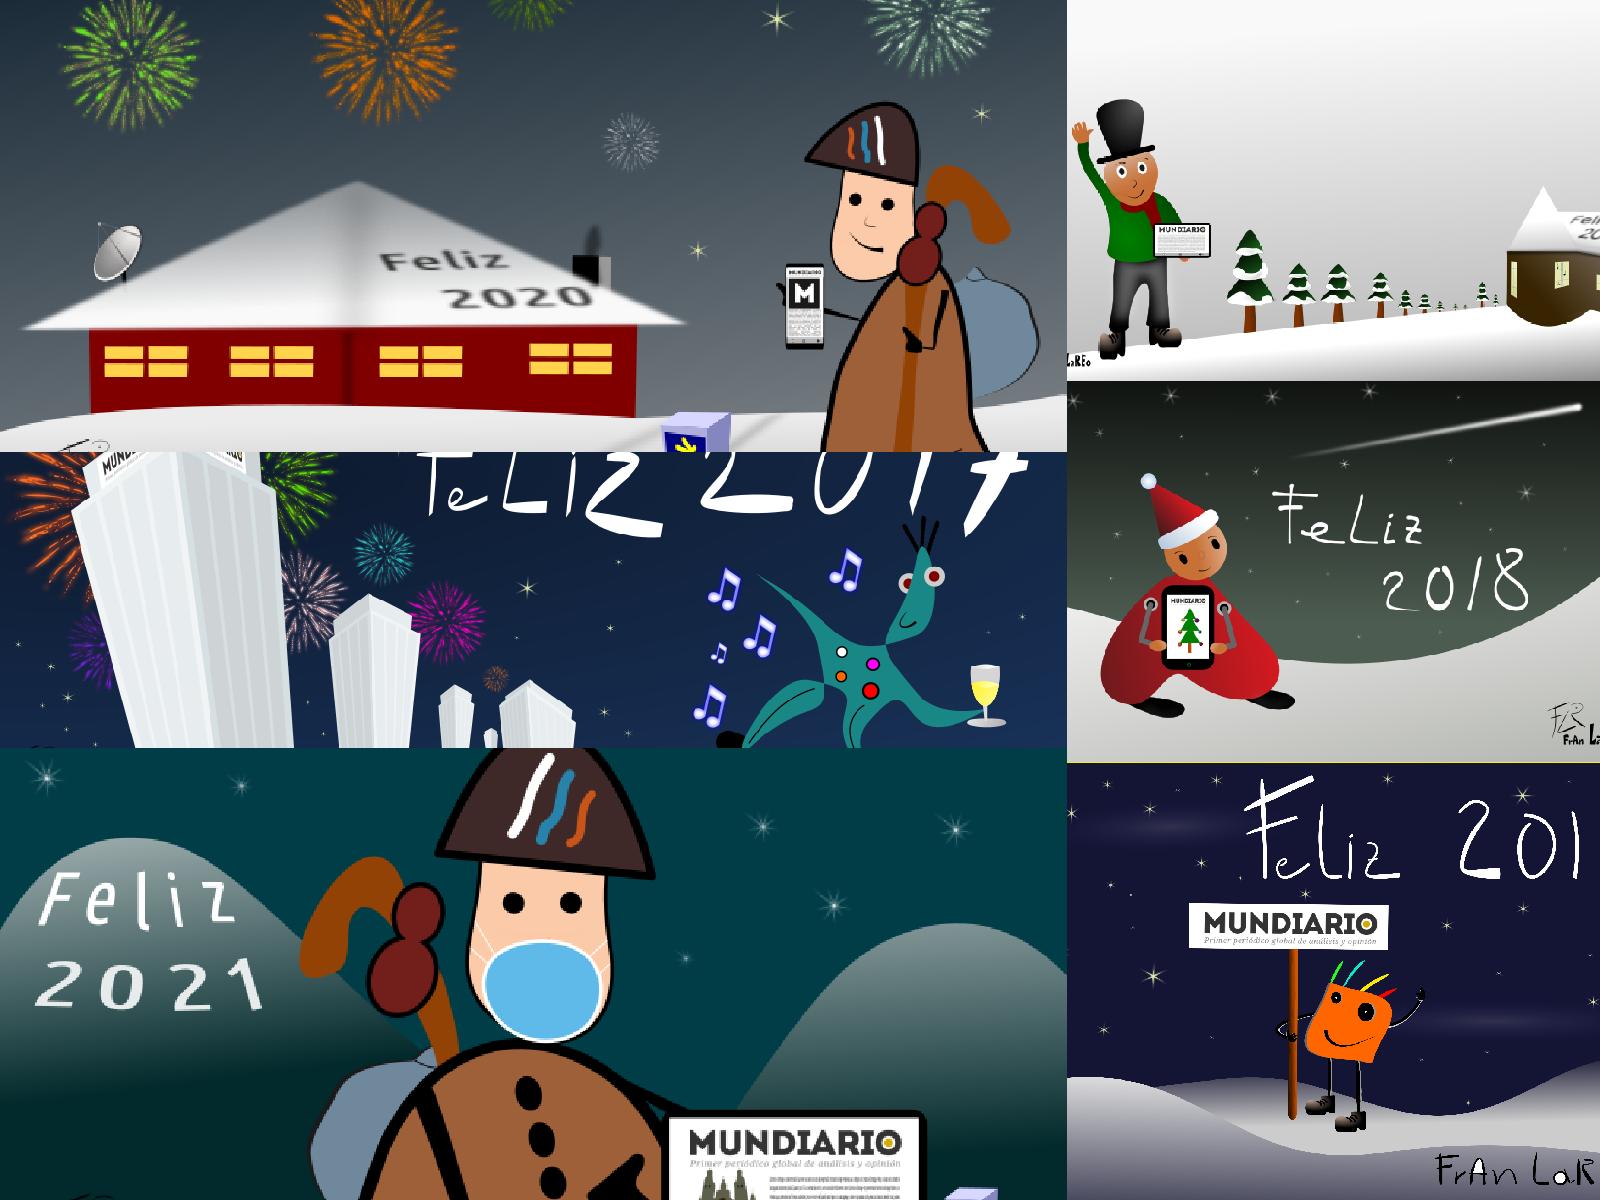 ilustraciones campañas de diciembre mundiario.com